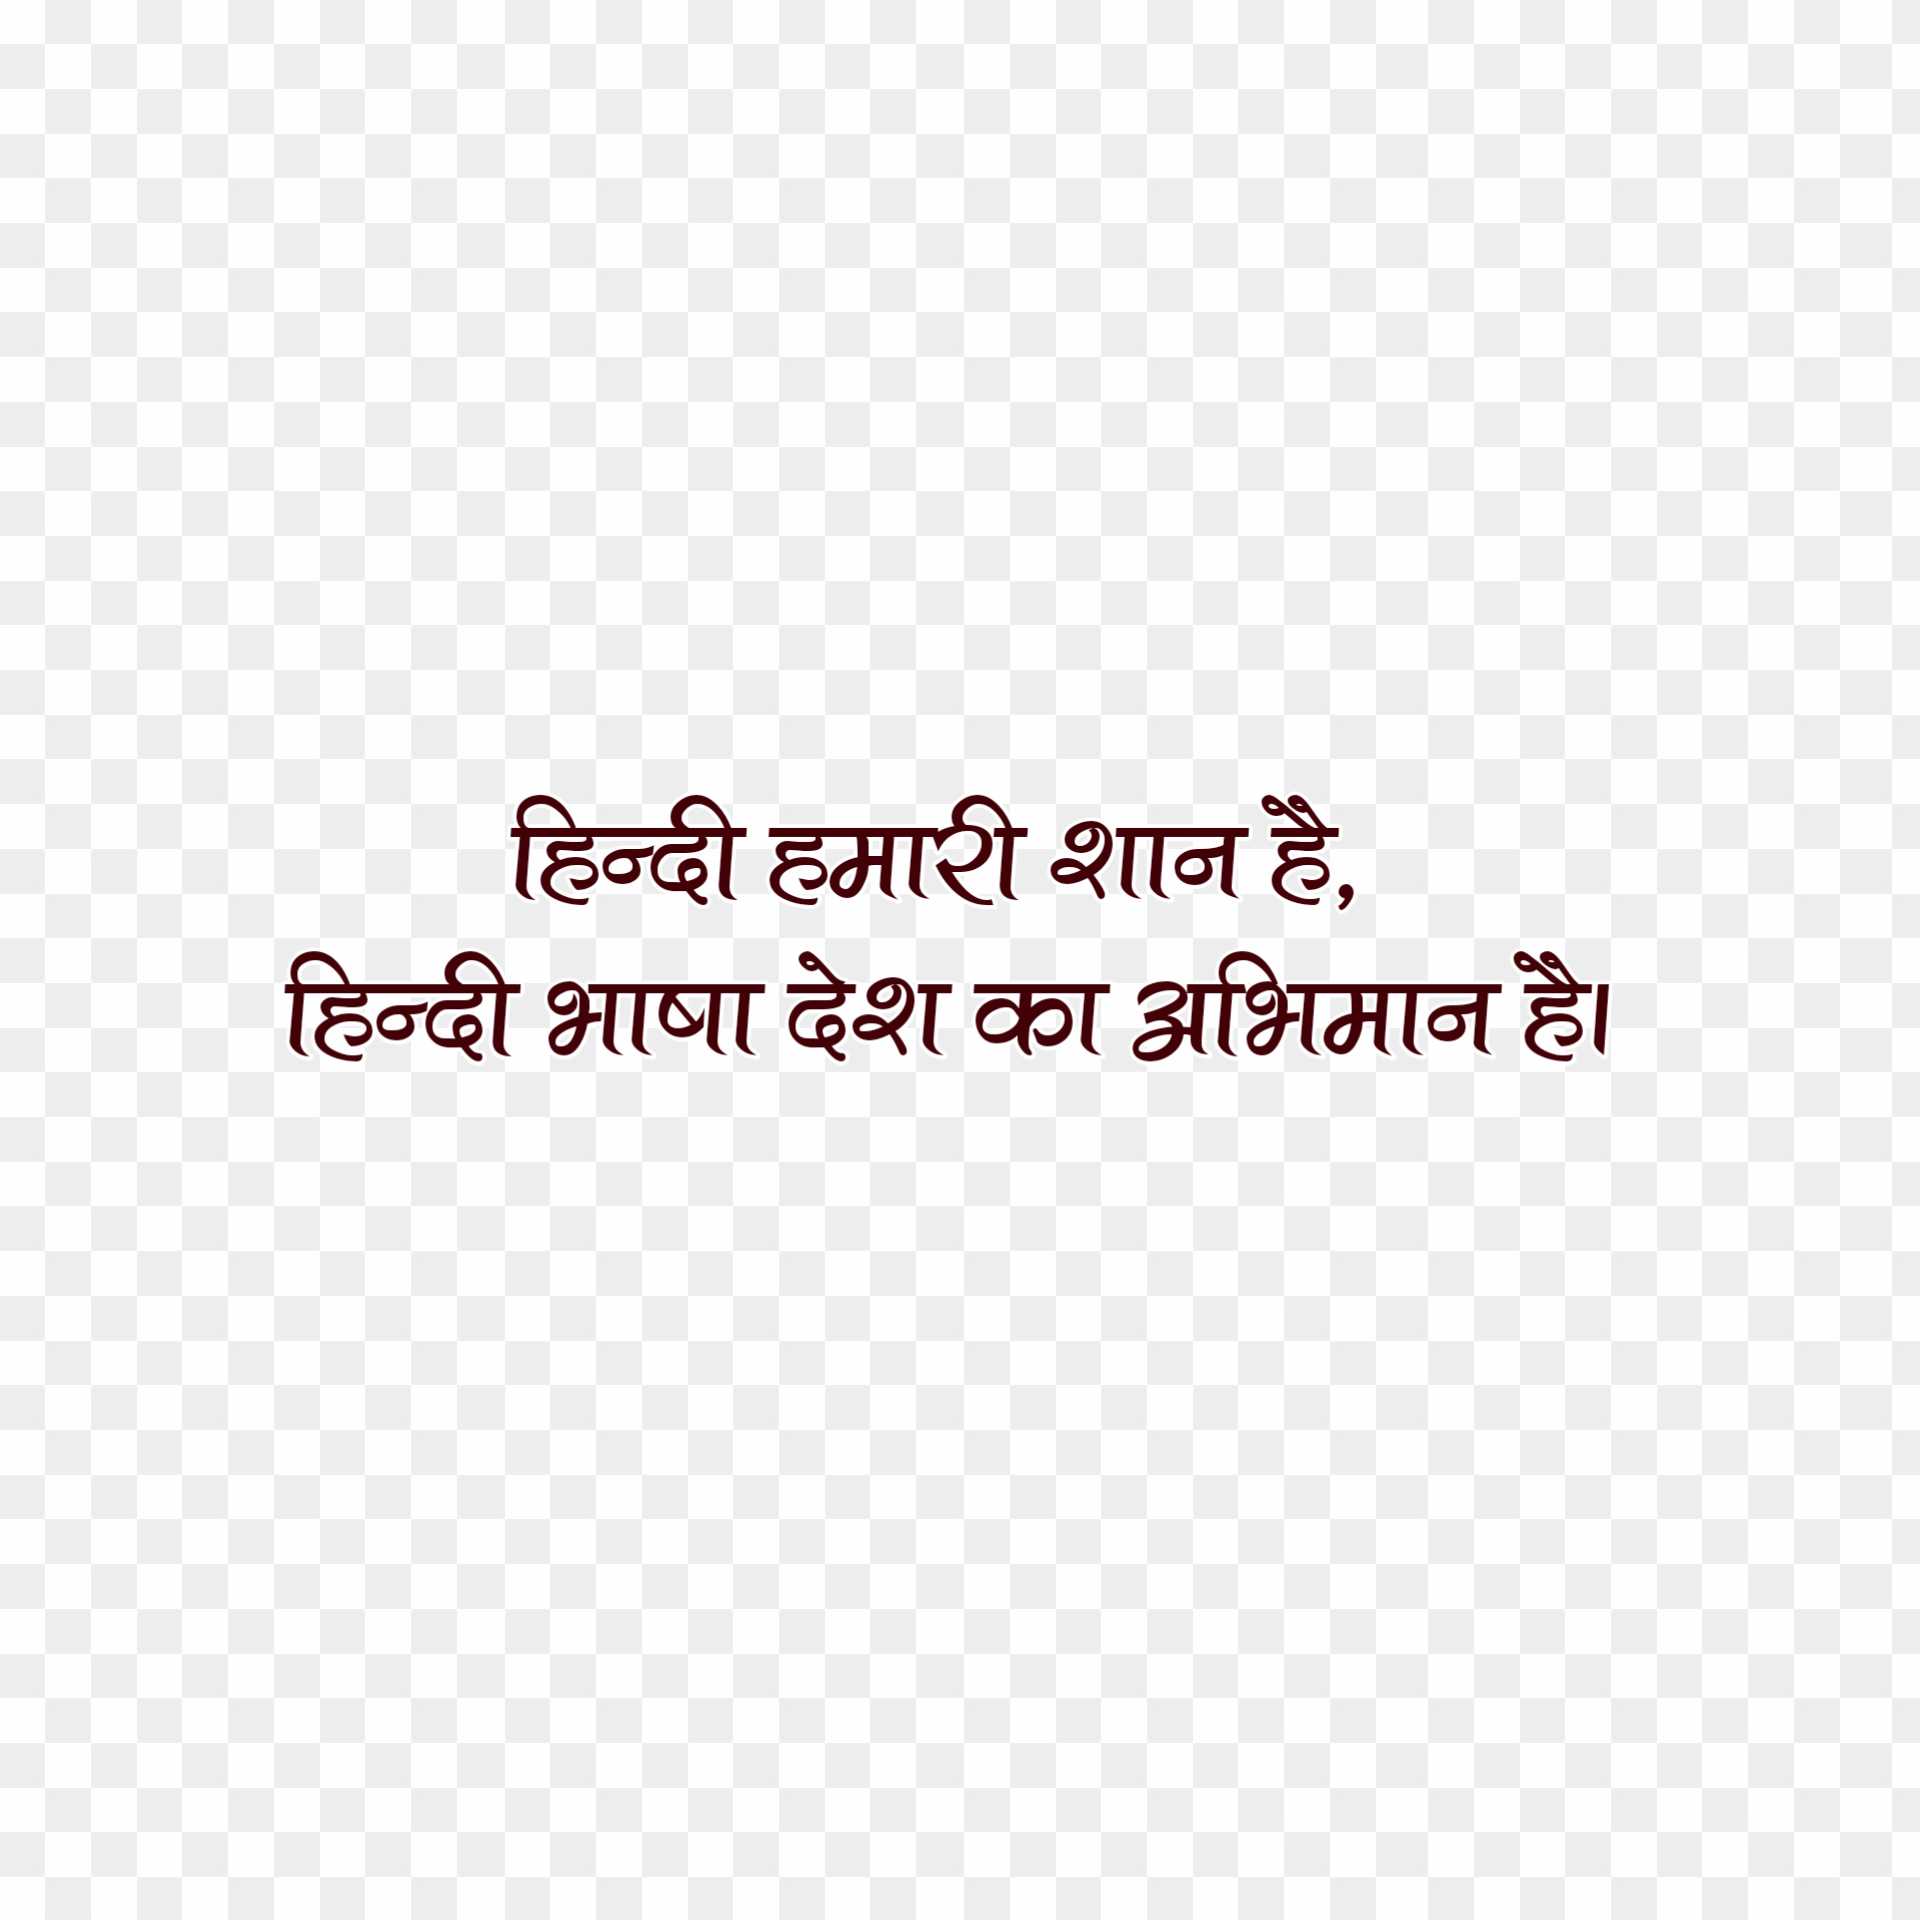 Hindi Divas quotes in Hindi 